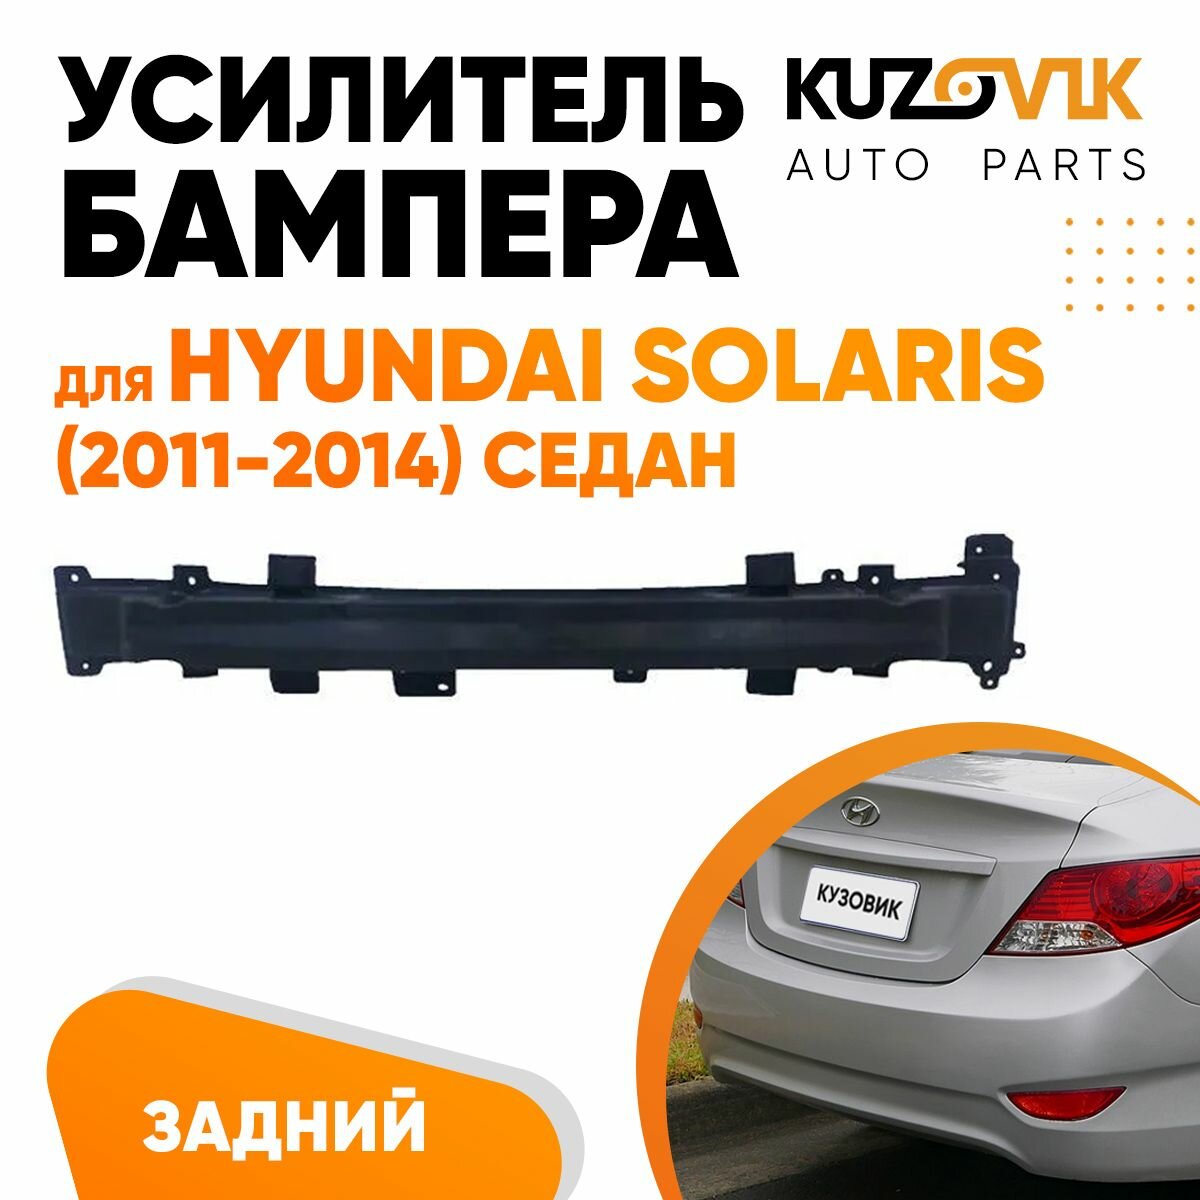 Абсорбер заднего бампера для Хендай Солярис Hyundai Solaris (2011-2014) седан пластиковый, усилитель бампера